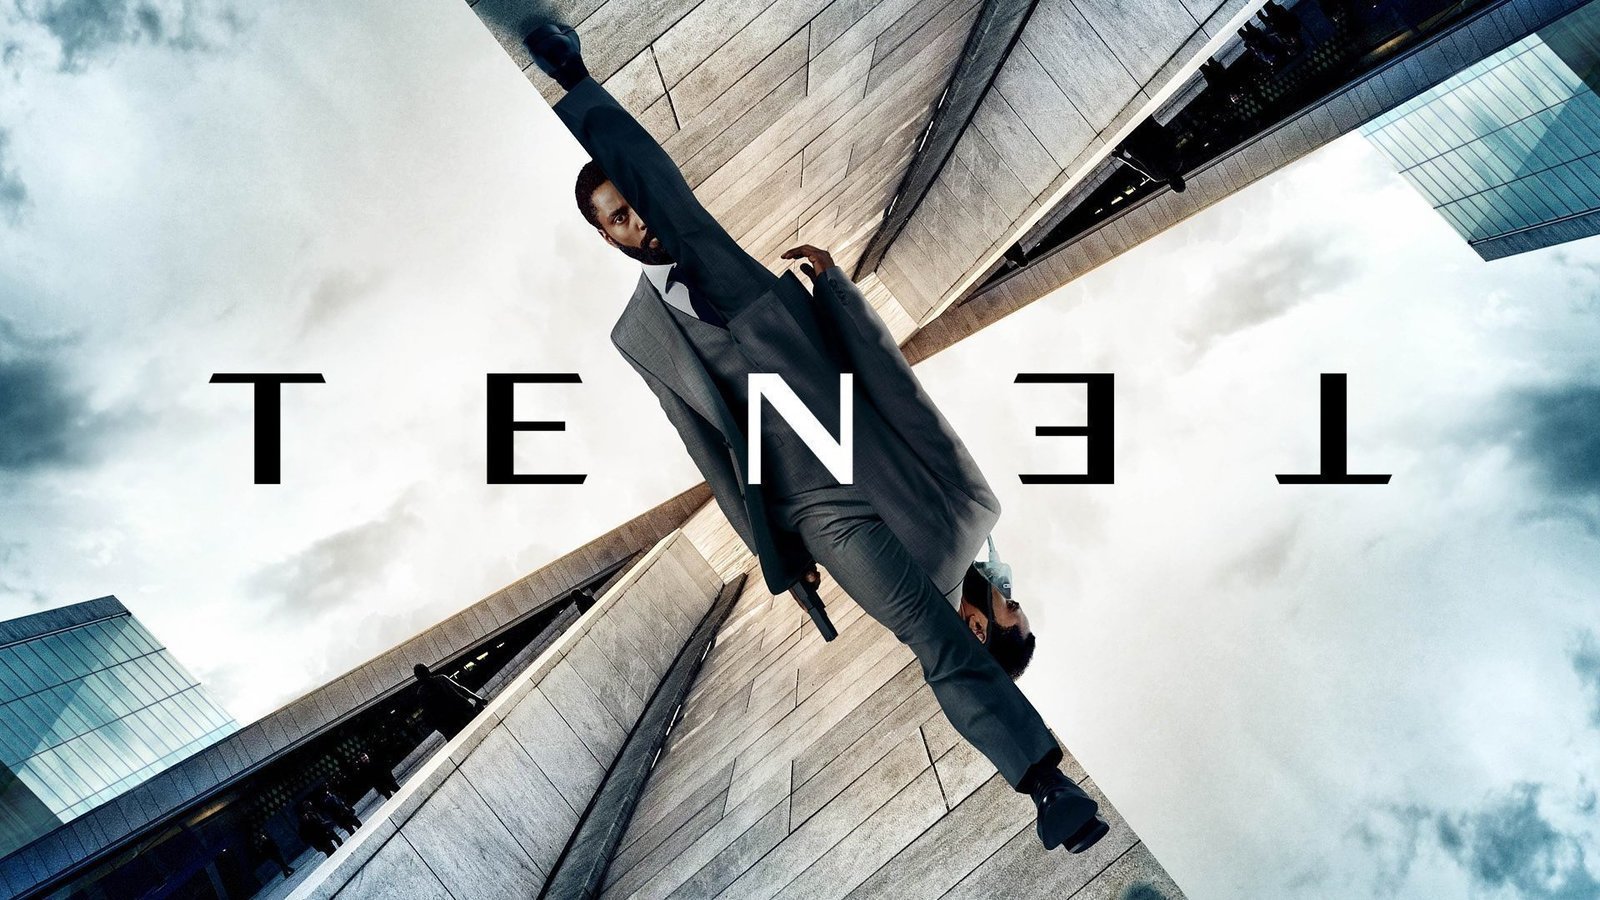 Tenet advances its premiere date in Spain